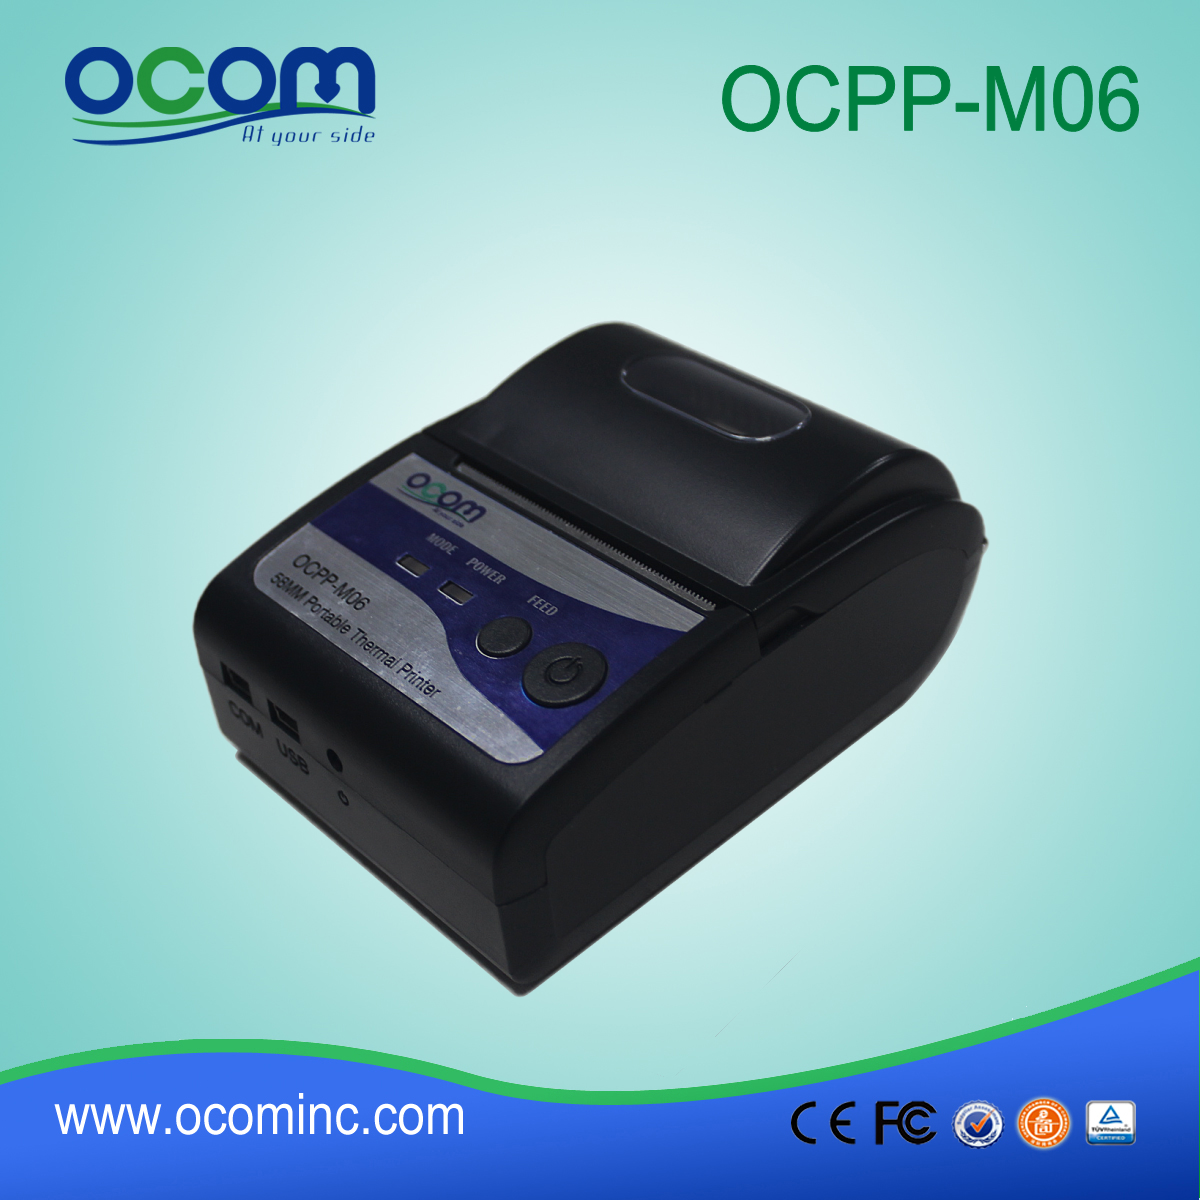 (OCPP-M06) OCOM 2015 Hot verkaufen android portable Drucker, tragbarer Drucker bluetooth